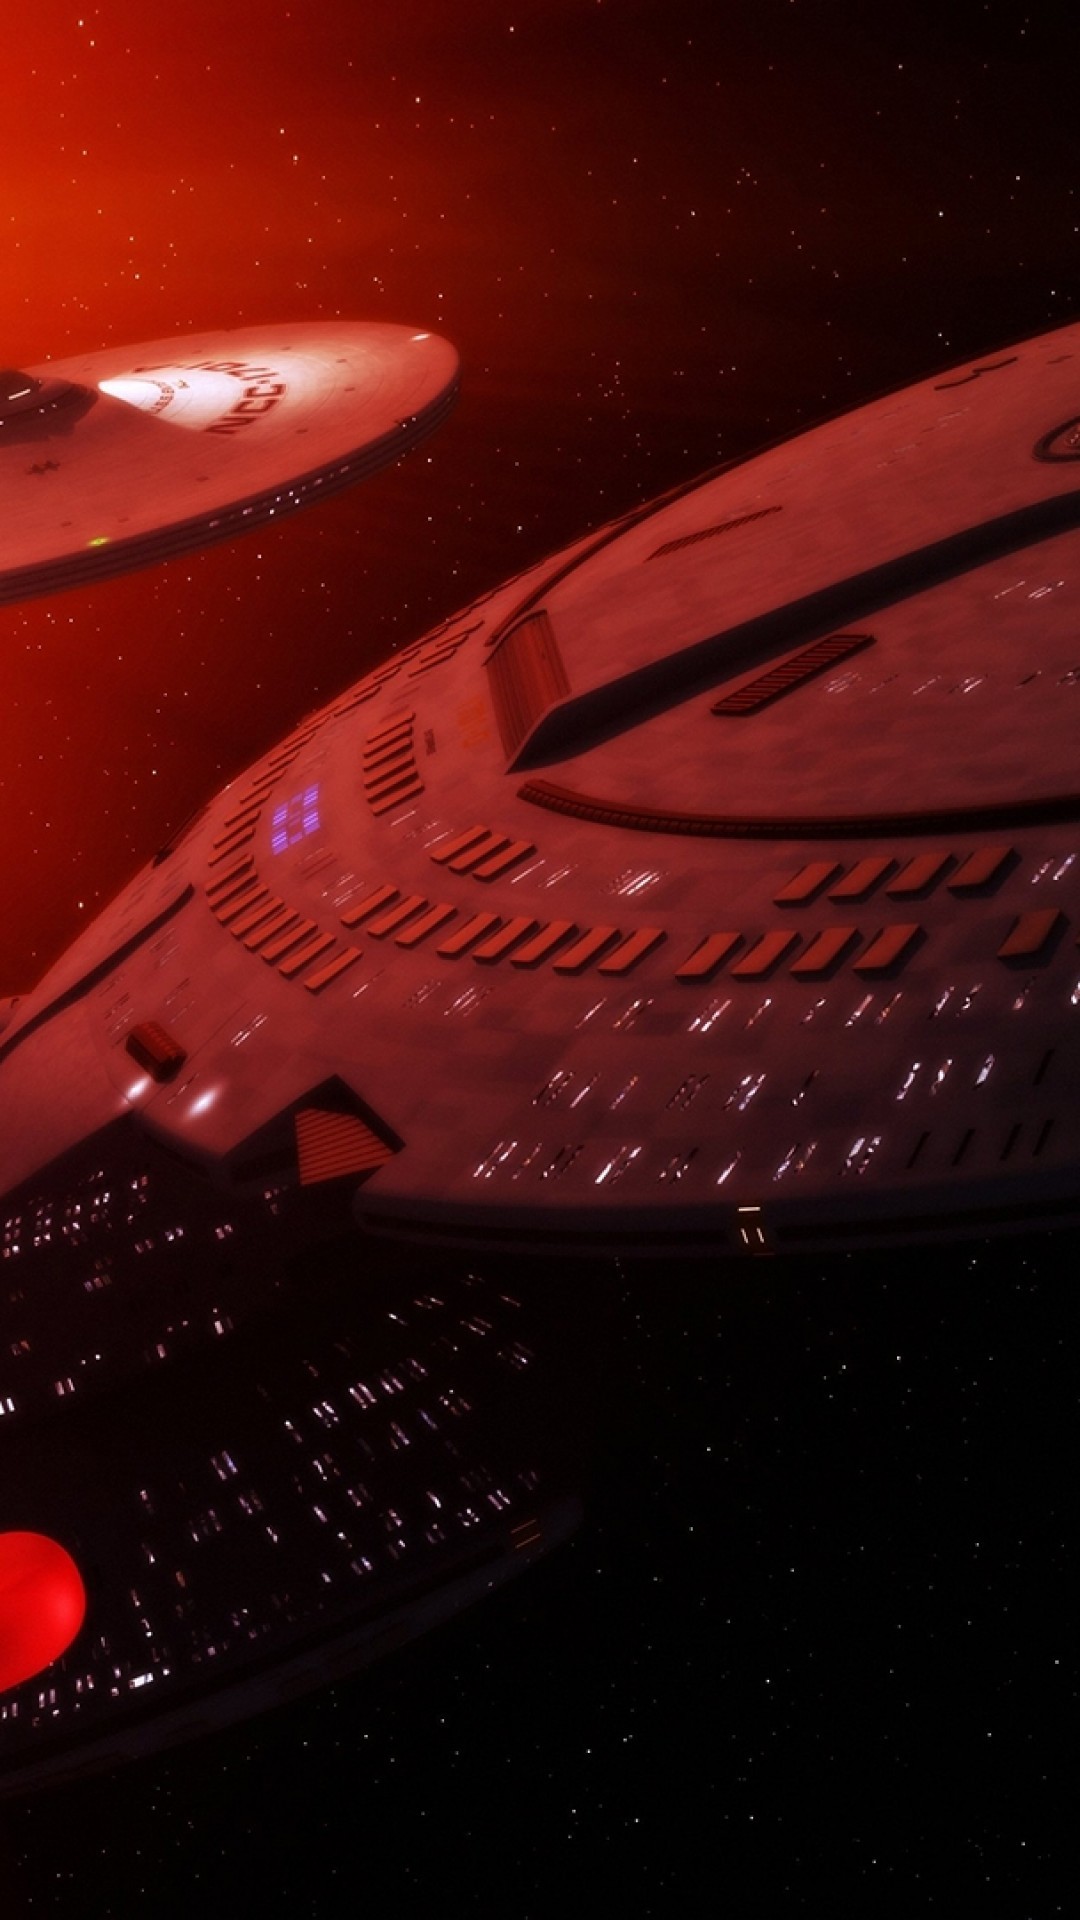 1080x1920 starship wallpaper #577469. Download  Starship Enterprise, Star  Trek ...